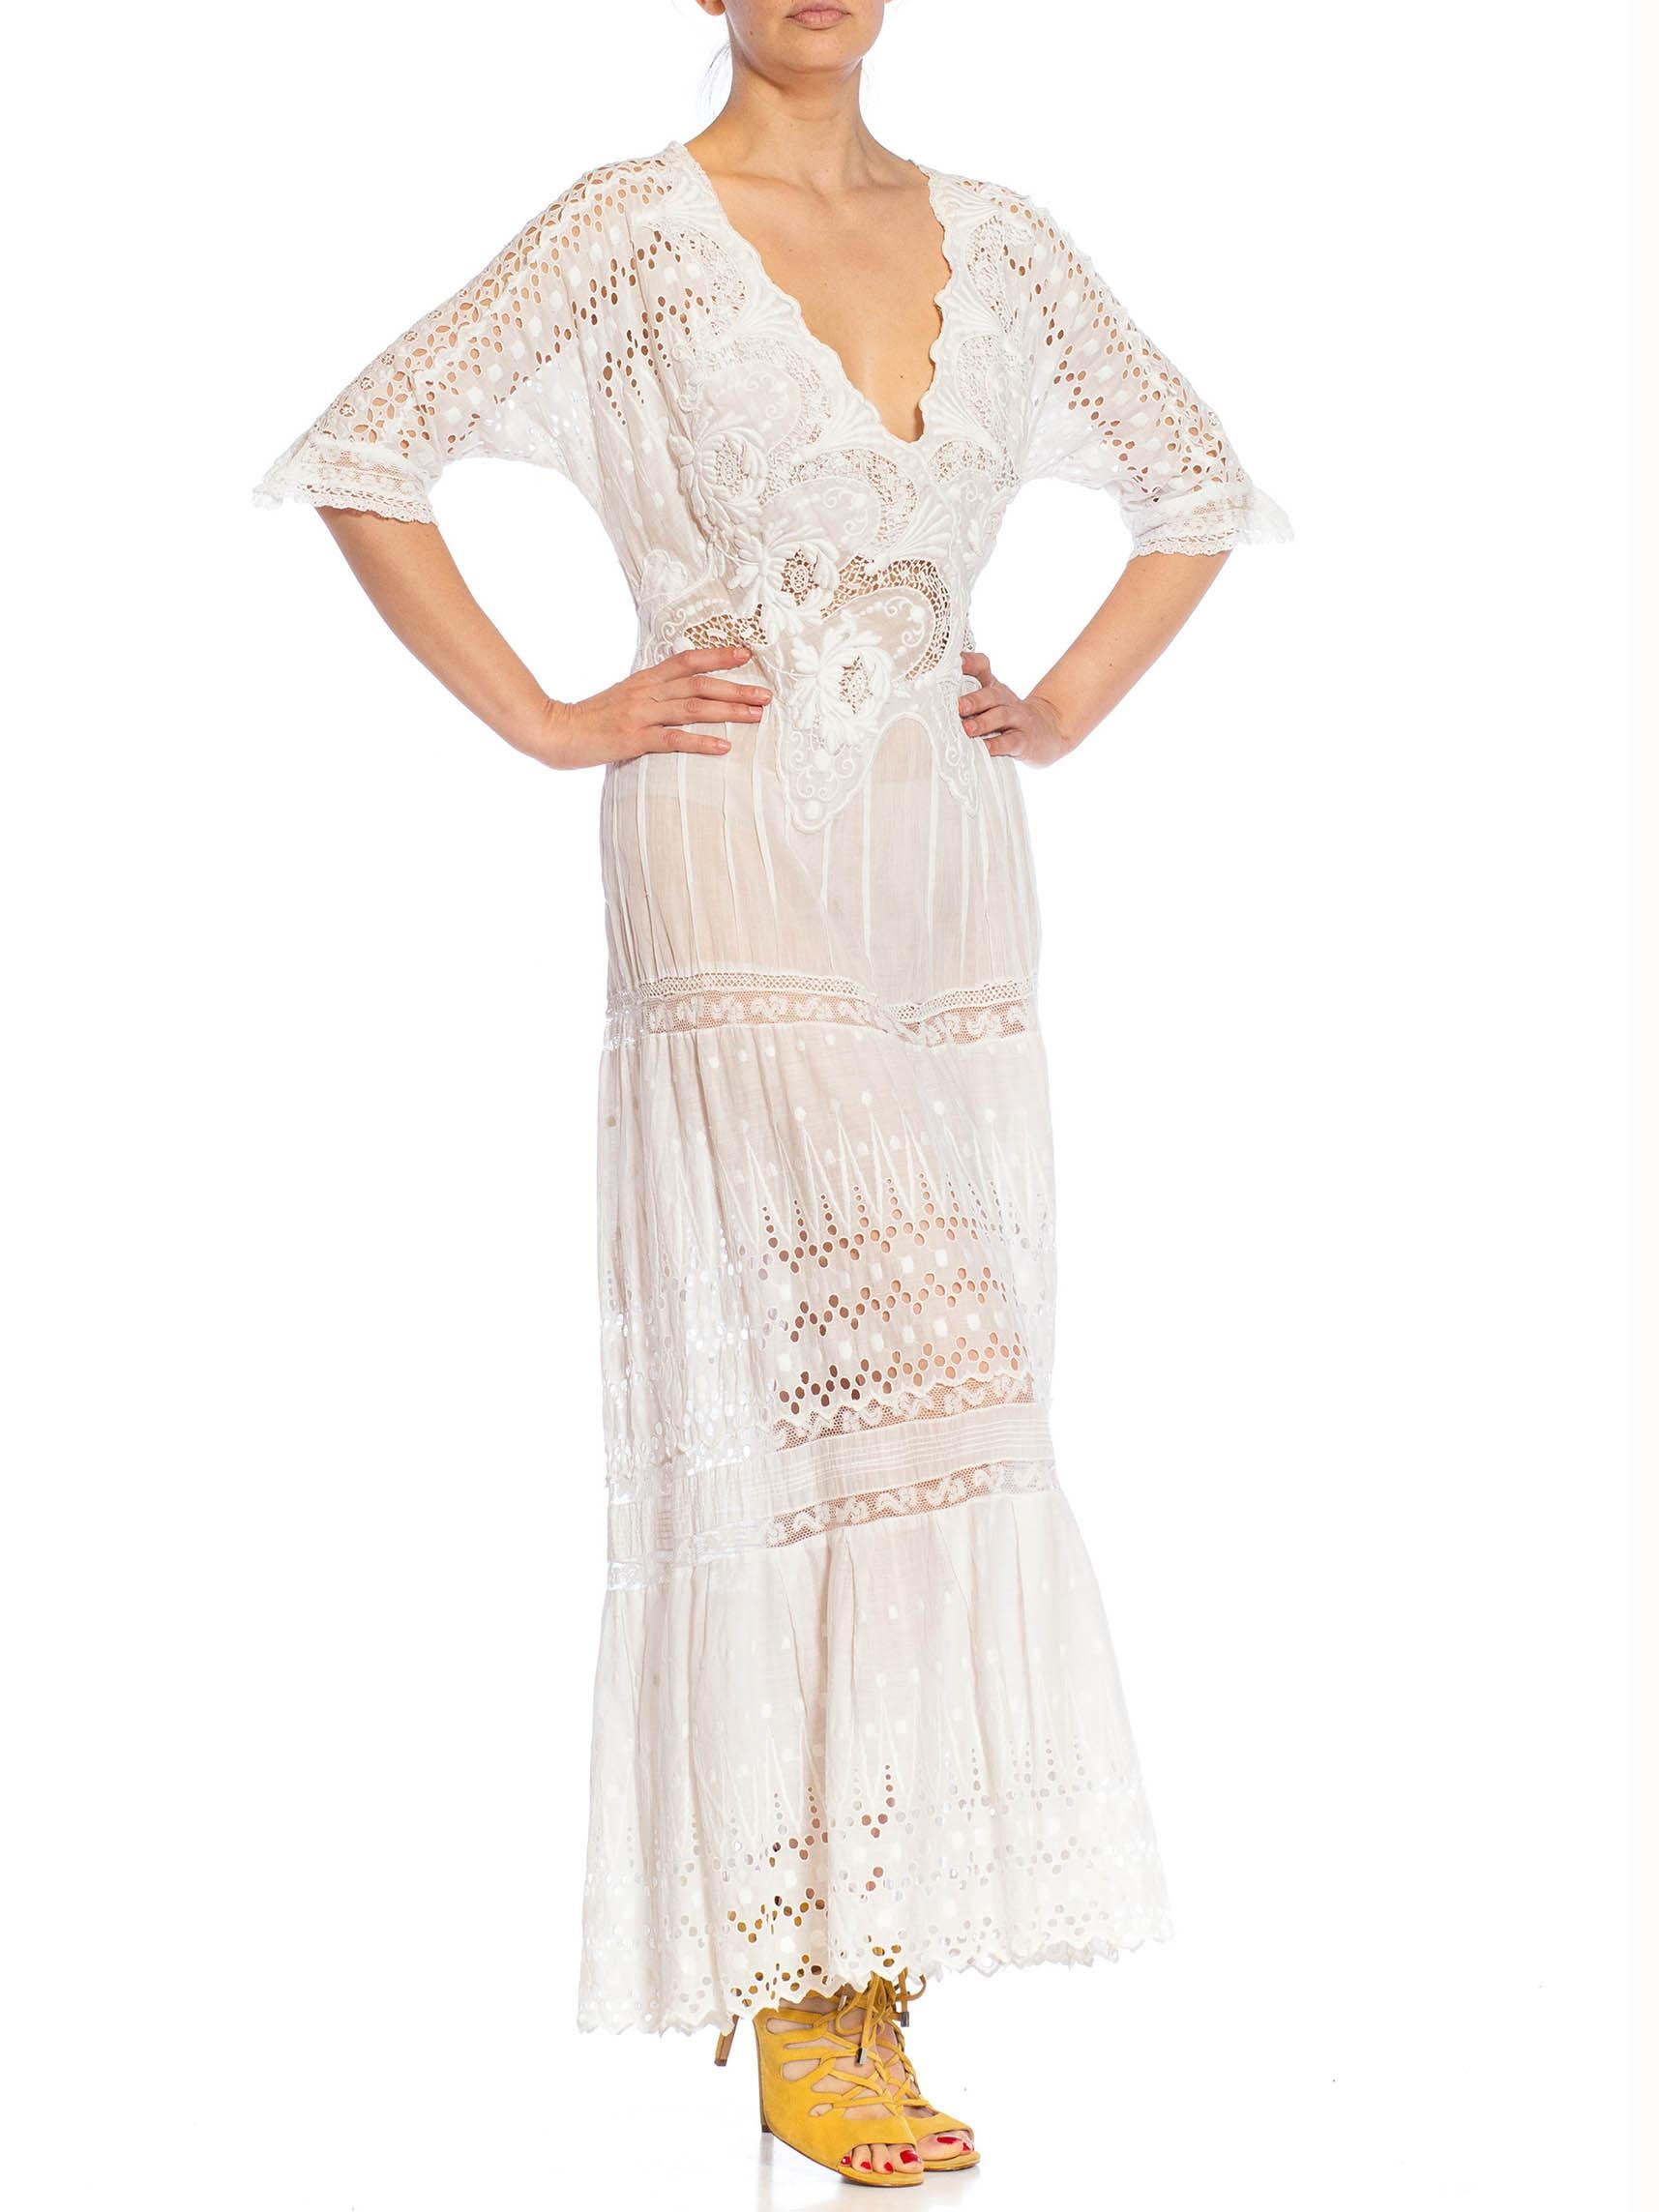 MORPHEW ATELIER White Organic Cotton Antique Lace Dress For Sale 1